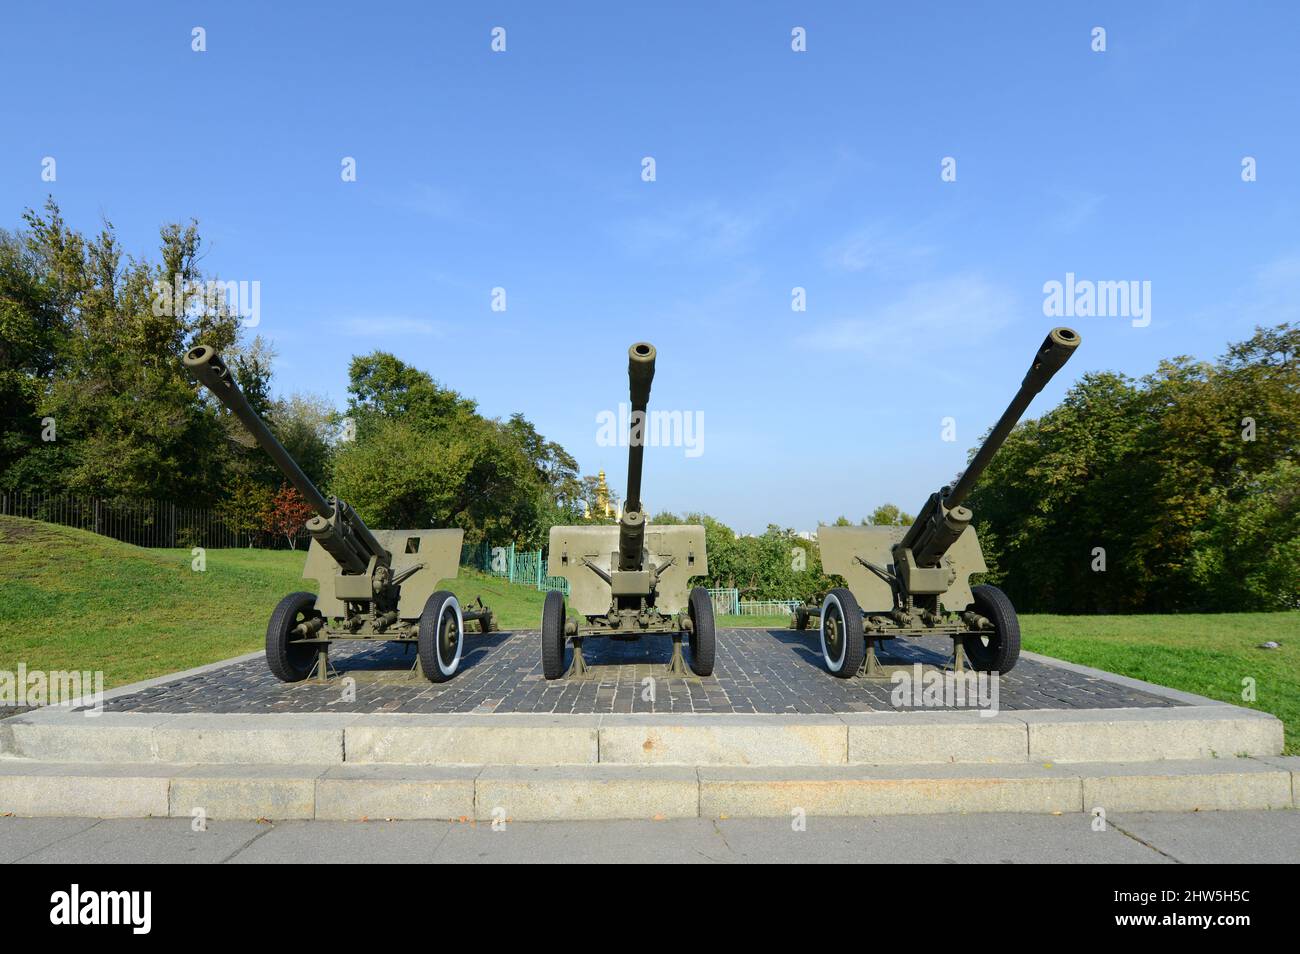 Complejo conmemorativo del Museo de la Gran Guerra Patriótica. Equipo militar exhibido, tanto viejo como capturado durante el conflicto de 2014 en Ucrania oriental. Foto de stock